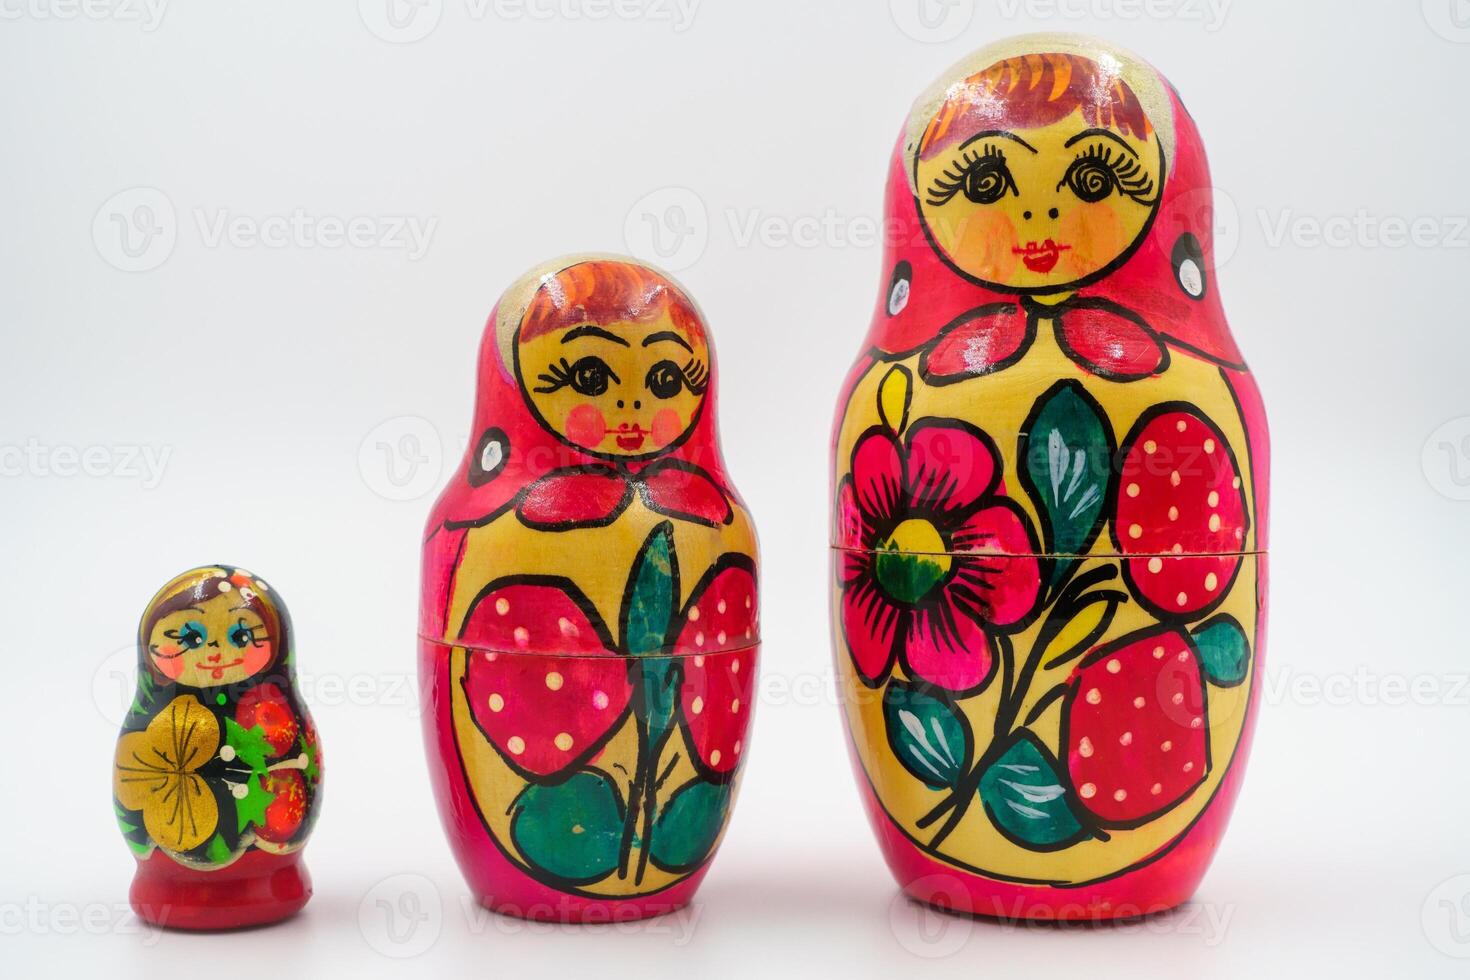 Russisch matryoshka nesten poppen, hand geschilderd met volk motieven, rood bloemen decoratie, cultureel handwerk, sier- stukken, symbool van Russisch erfenis, houten speelgoed. wit achtergrond foto